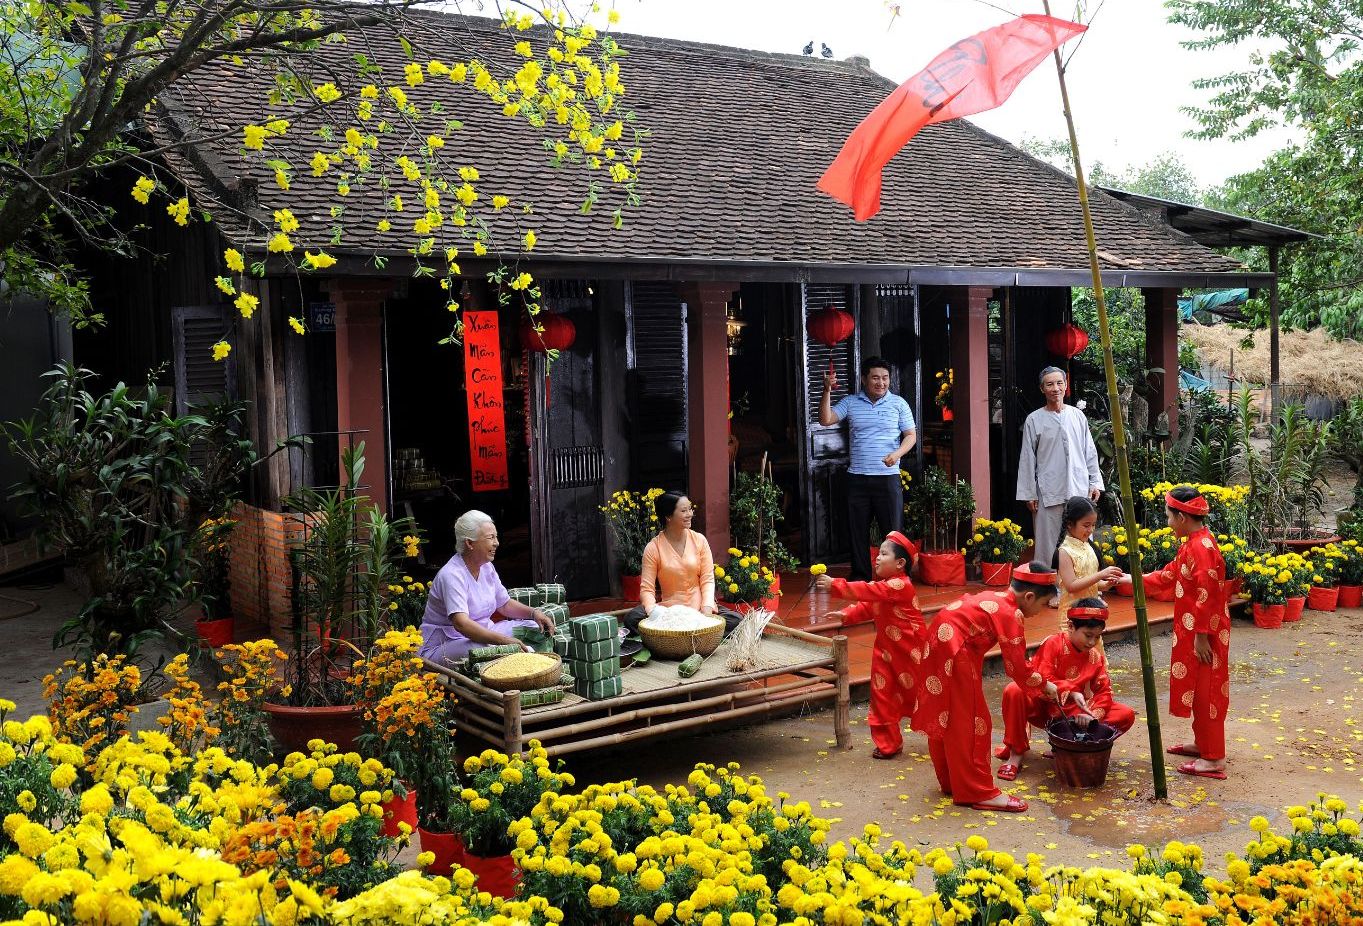 Tết Nguyên đán 2022: Chào đón năm mới cùng Tết Nguyên đán 2022, một trong những lễ hội truyền thống quan trọng nhất của Việt Nam! Hãy cùng chúng tôi khám phá những nét đặc trưng của Tết và những hoạt động đặc sắc chỉ có vào dịp này. Hình ảnh liên quan chắc chắn sẽ khiến bạn háo hức chờ đón!